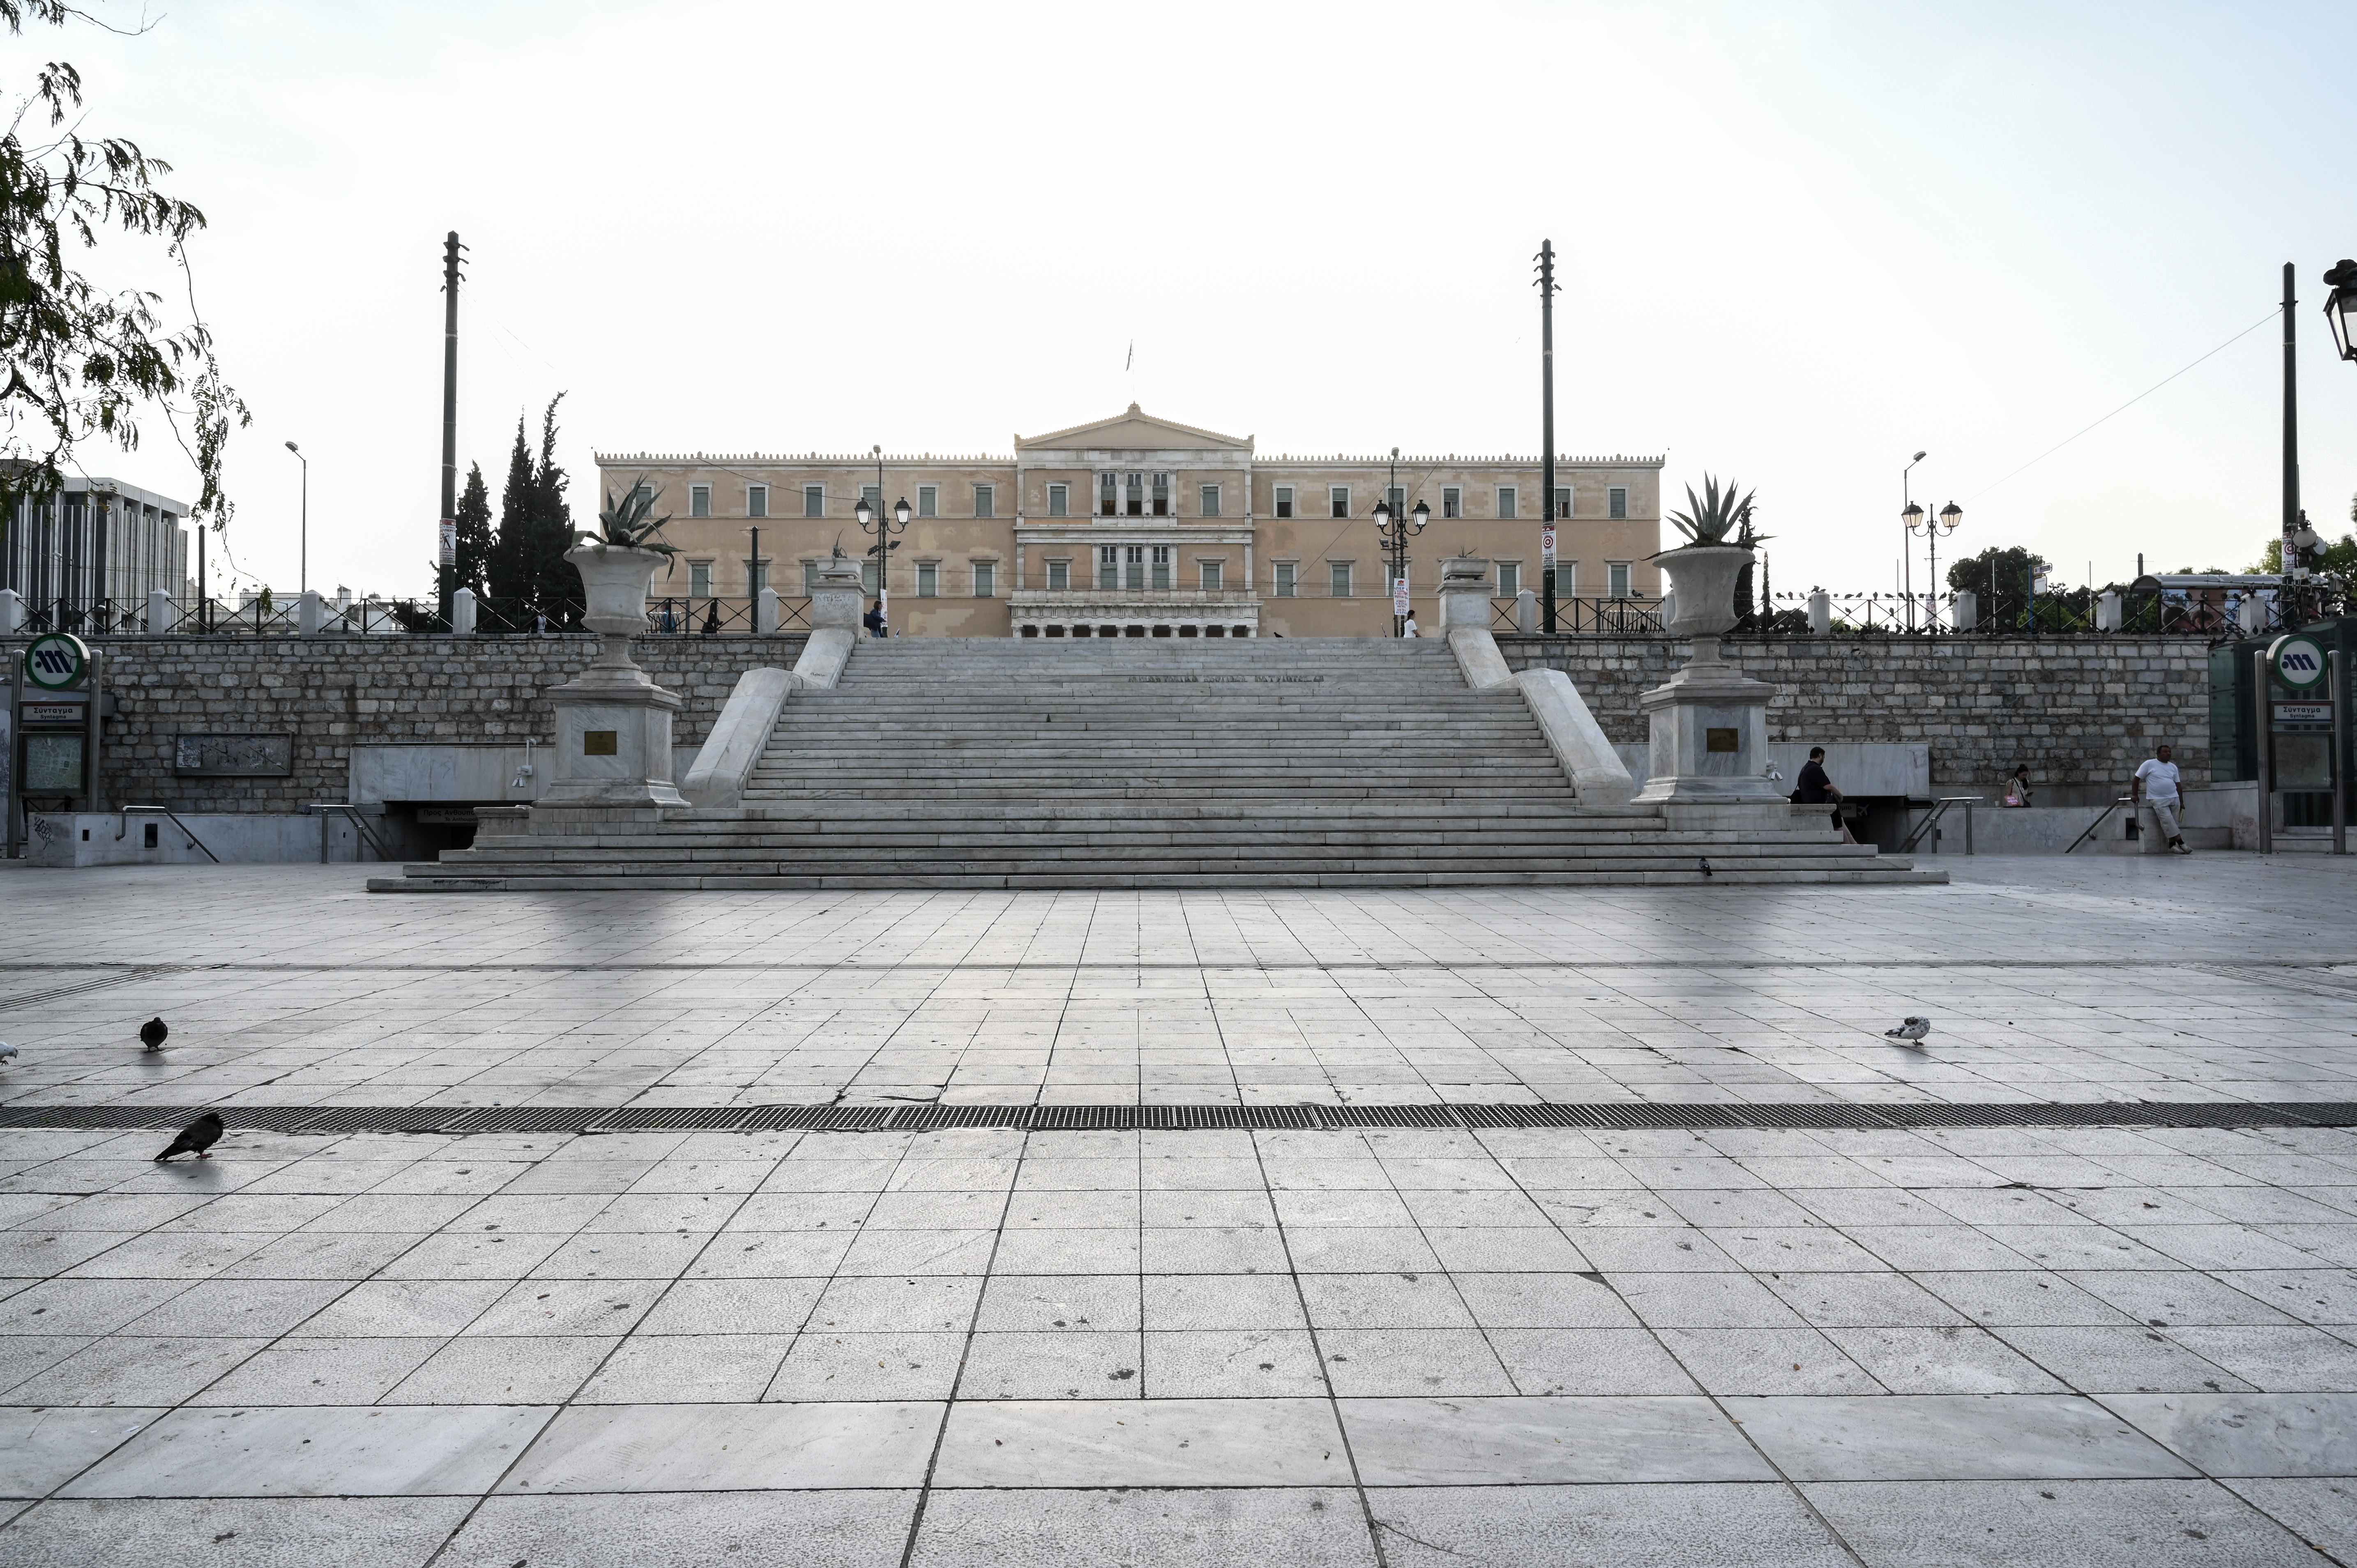 Δήμος Αθηναίων – Σύνταγμα: Μεγάλη παρέμβαση καθαριότητας της πλατείας